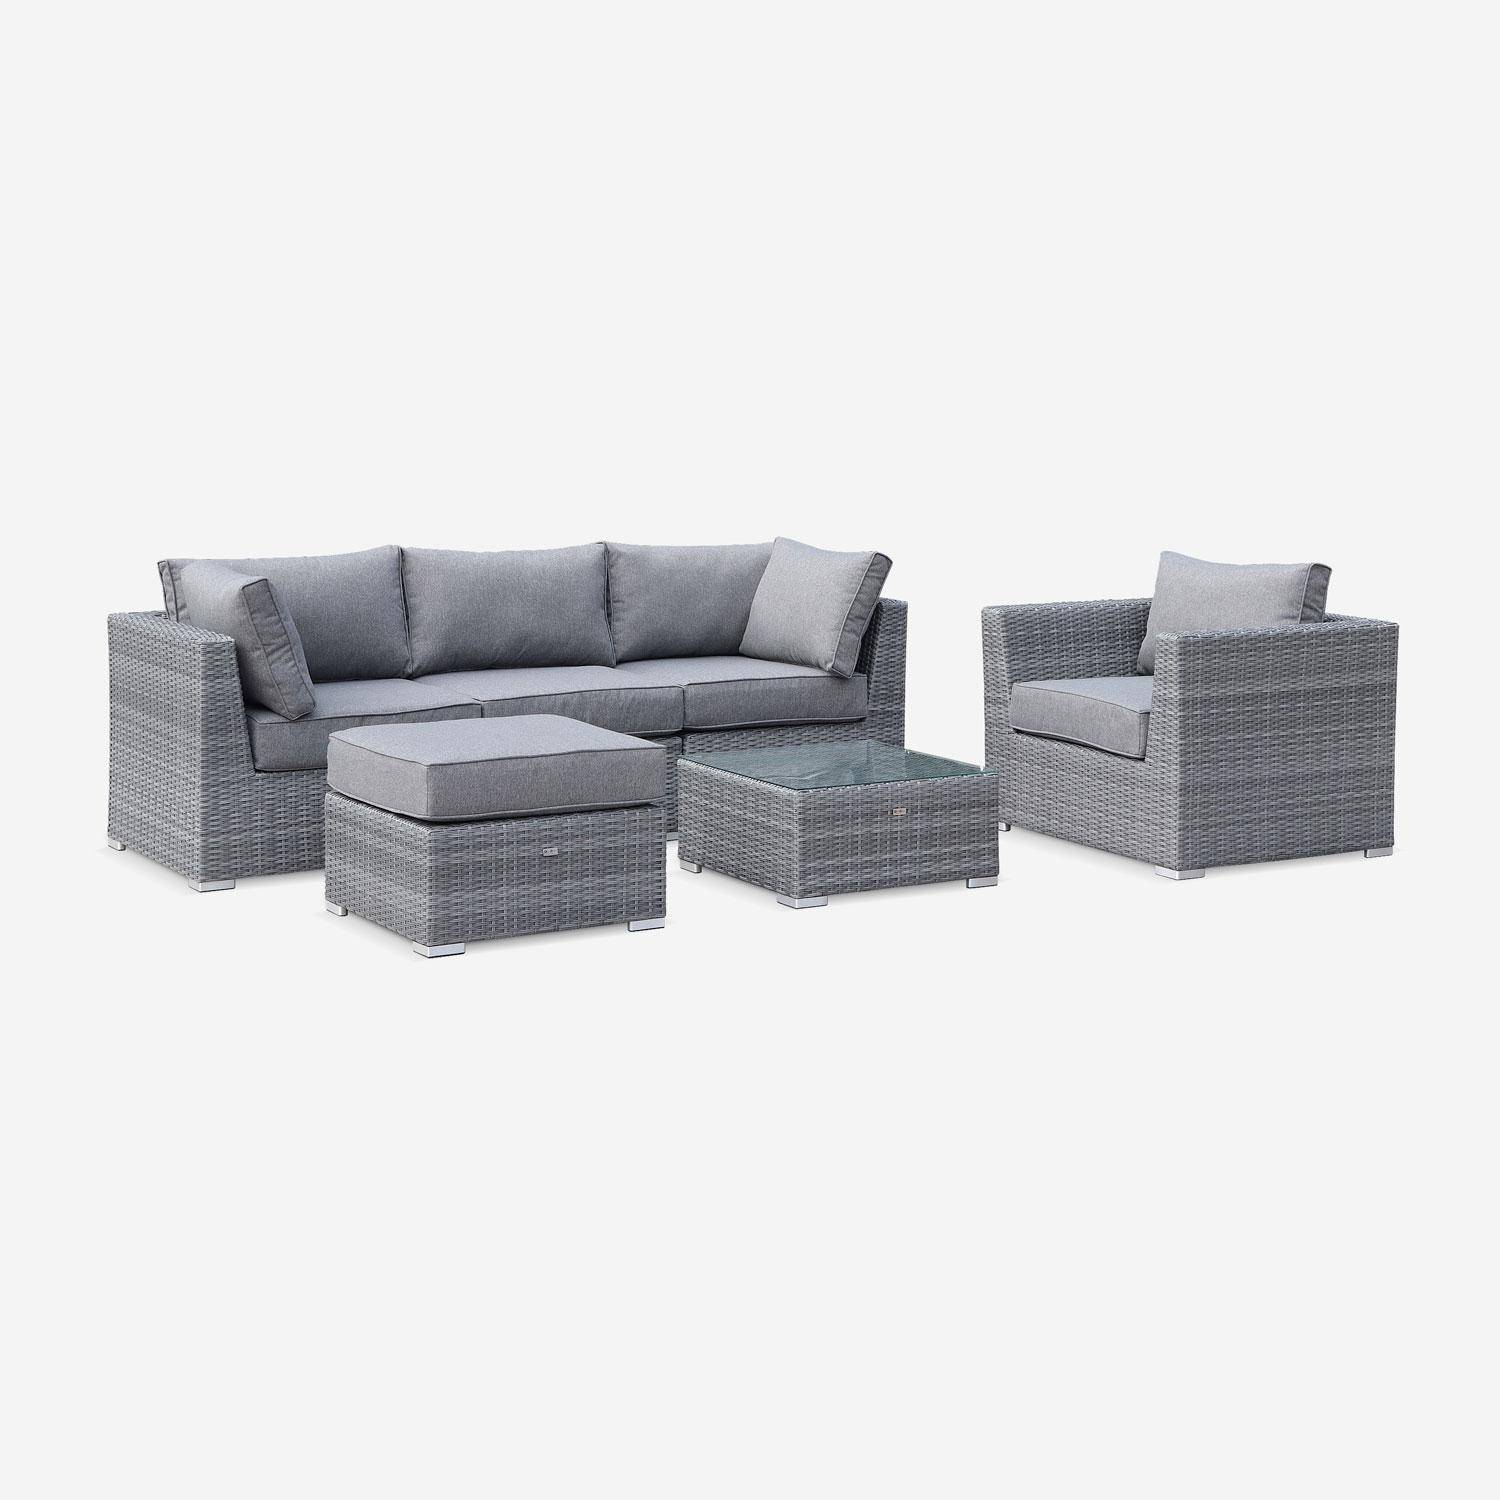 Muebles de jardín de resina trenzada redonda - VINCI - Cojines - 5 asientos, ajustable, ultra cómodo, de alta gama Photo2